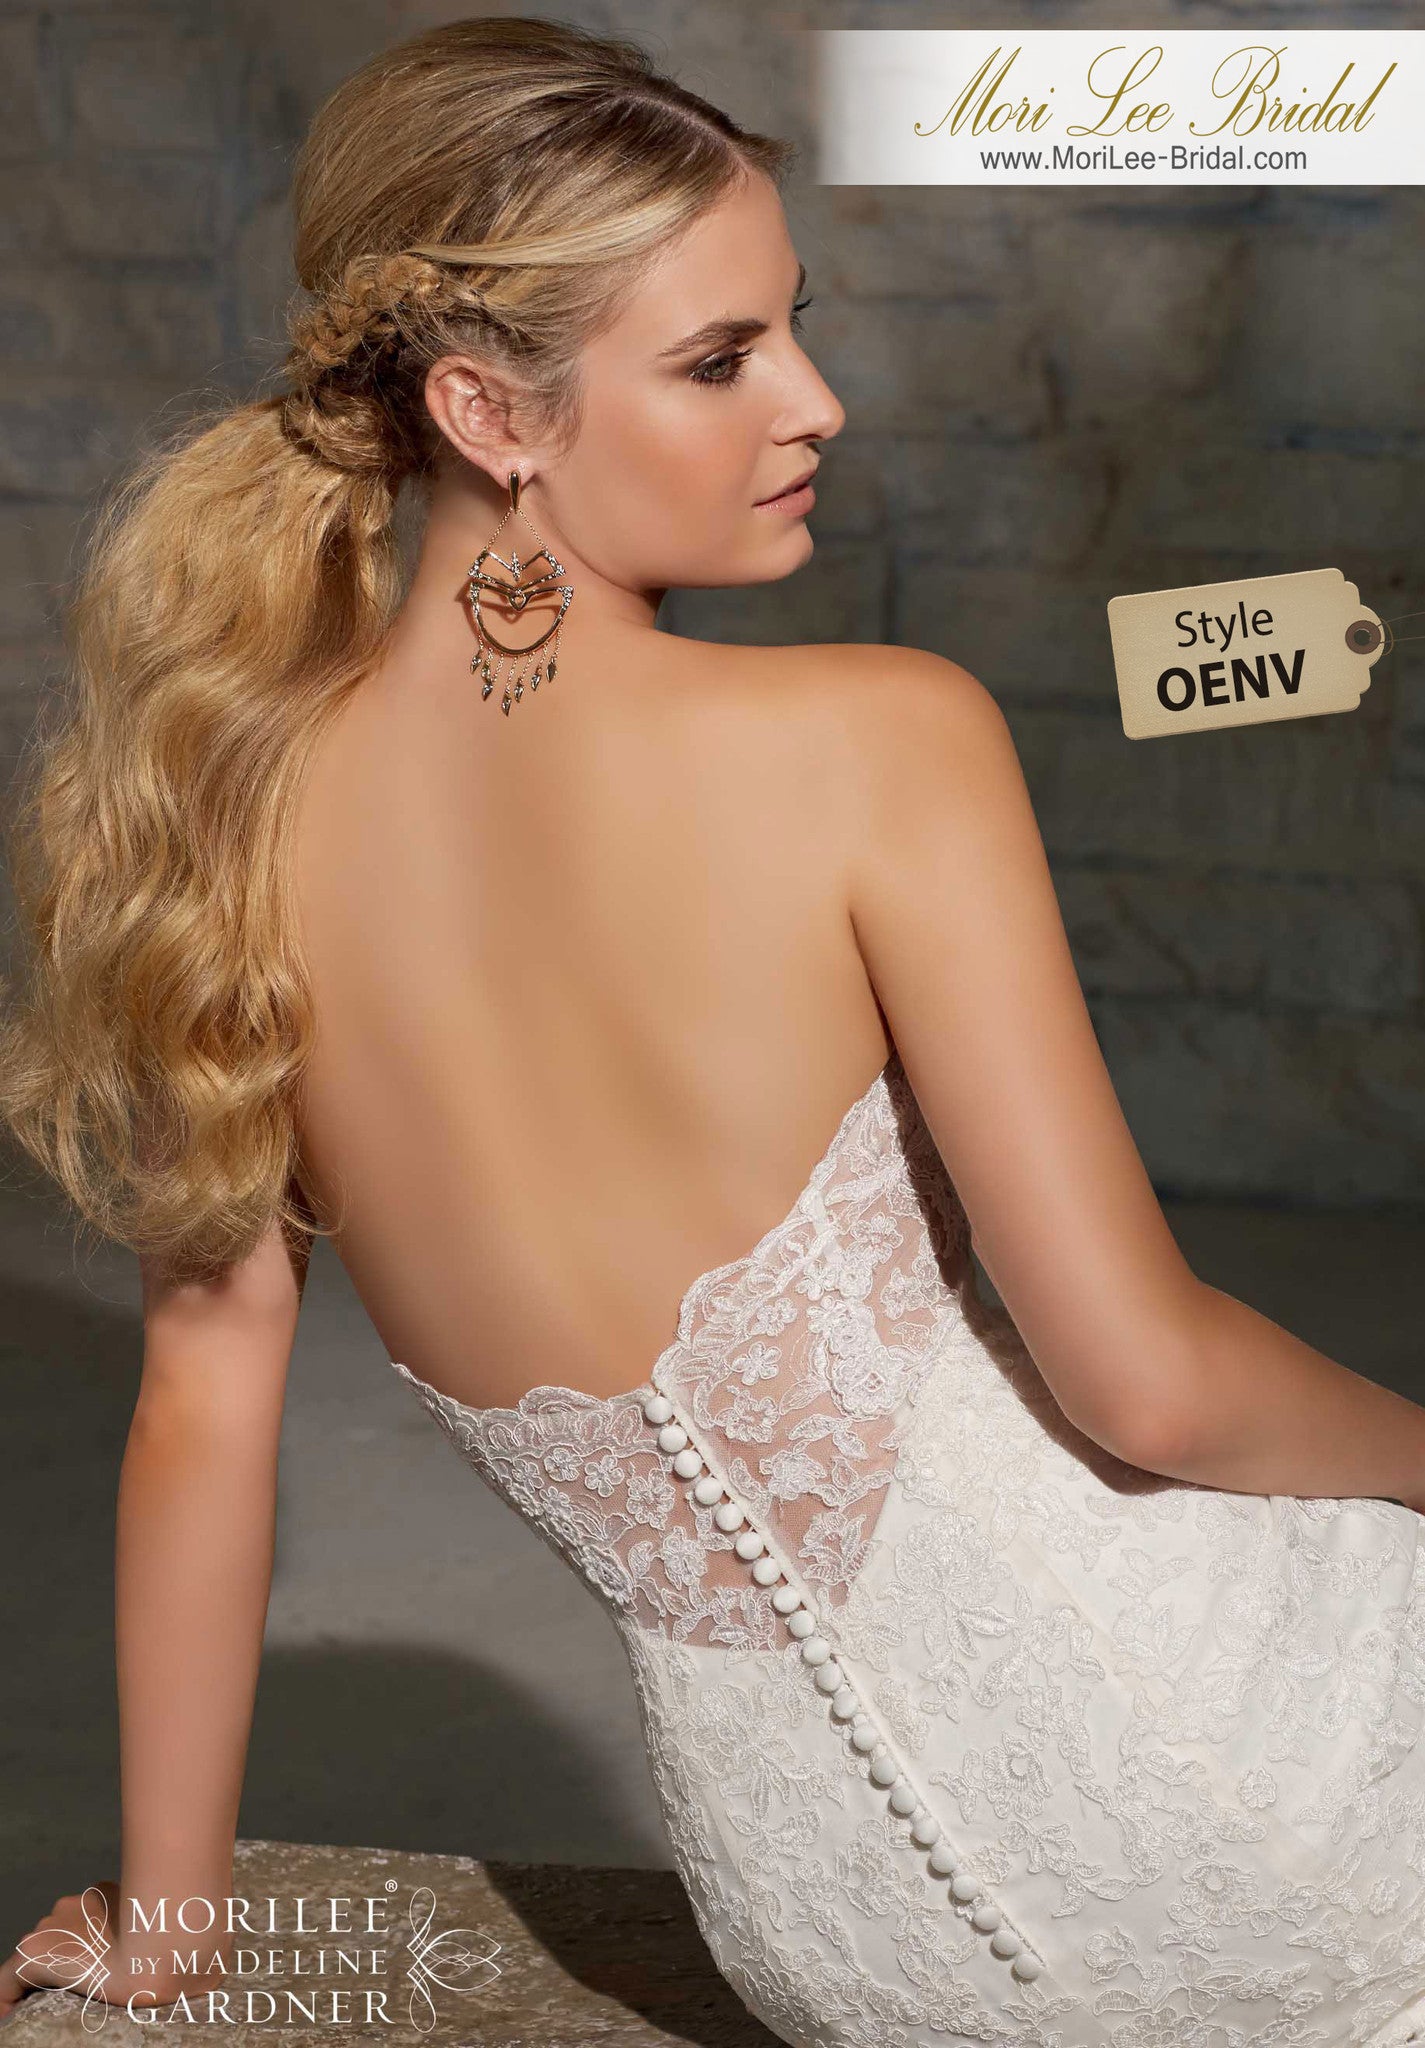 Elegante vestido de novia con encaje Alencon. Detalles sutiles como los bordes festoneados alrededor del escote y la ilusión en la espalda. OENV*